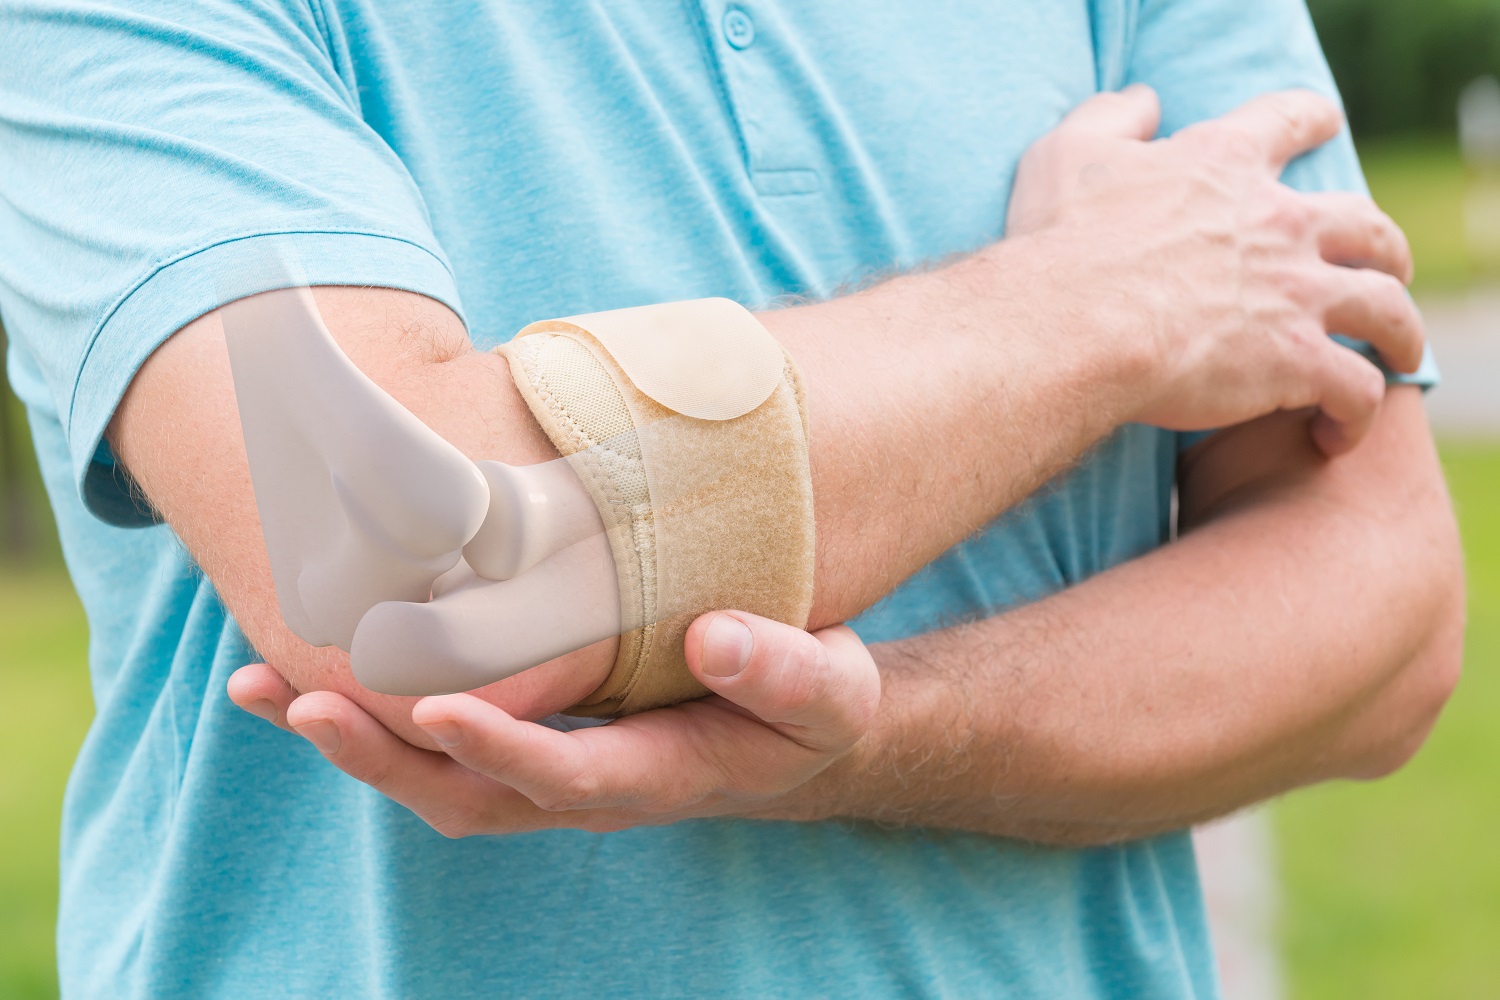 Lakat boli: uzroci boli tijekom fleksije i ekstenzije